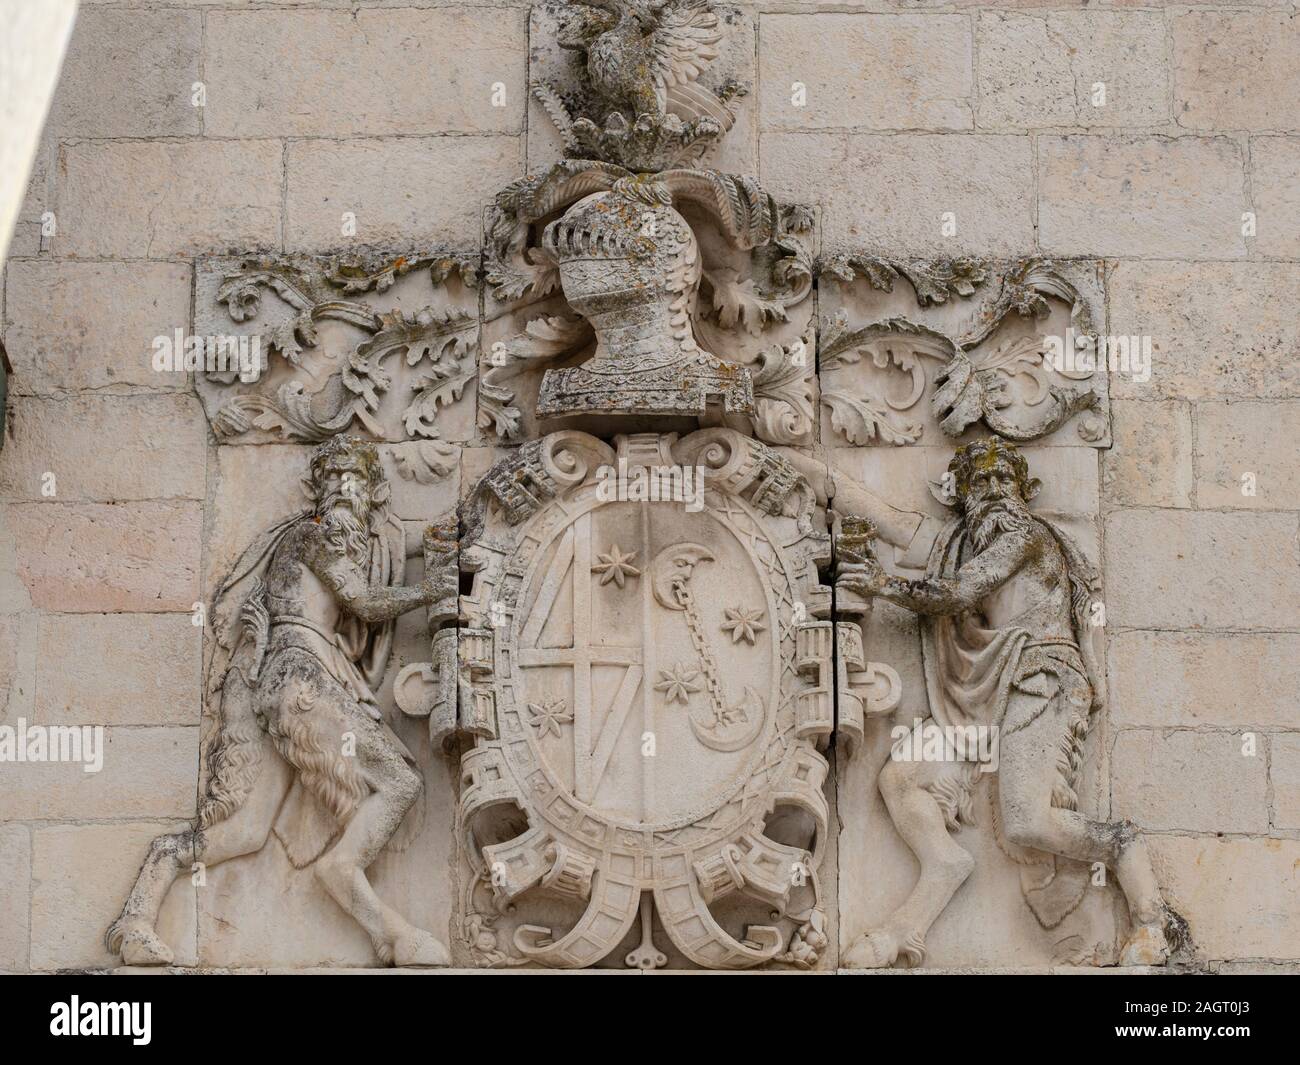 Palacio Bustamante, barroco, siglo XVII, escudo de armas de los Zumalburu y Vicuñas,Salvatierra, Álava , comunidad autónoma del País Vasco, Spain. Stock Photo